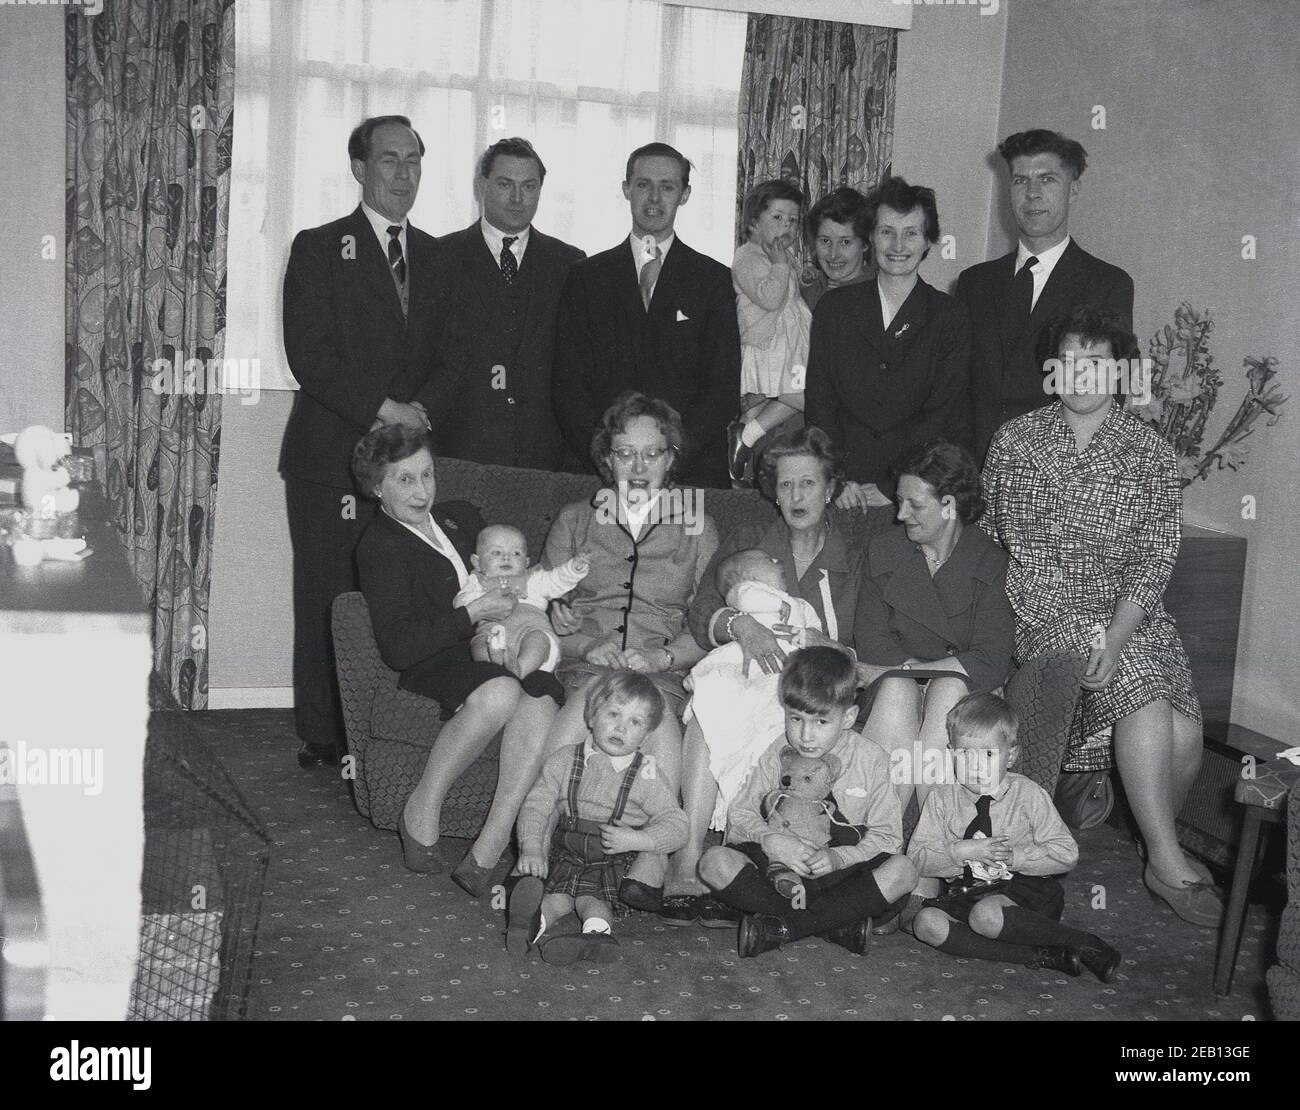 1950s, historisch, in einem vorderen Raum eines Hauses, eine große Familie versammeln sich für ein Gruppenfoto, mit vier Generationen alle zusammen, vielleicht nach der Taufe des neuen Babys, die von seiner Großmutter auf dem Sofa gehalten. Ein kleiner Junge sitzt und hält seinen Teddybär. Stockfoto